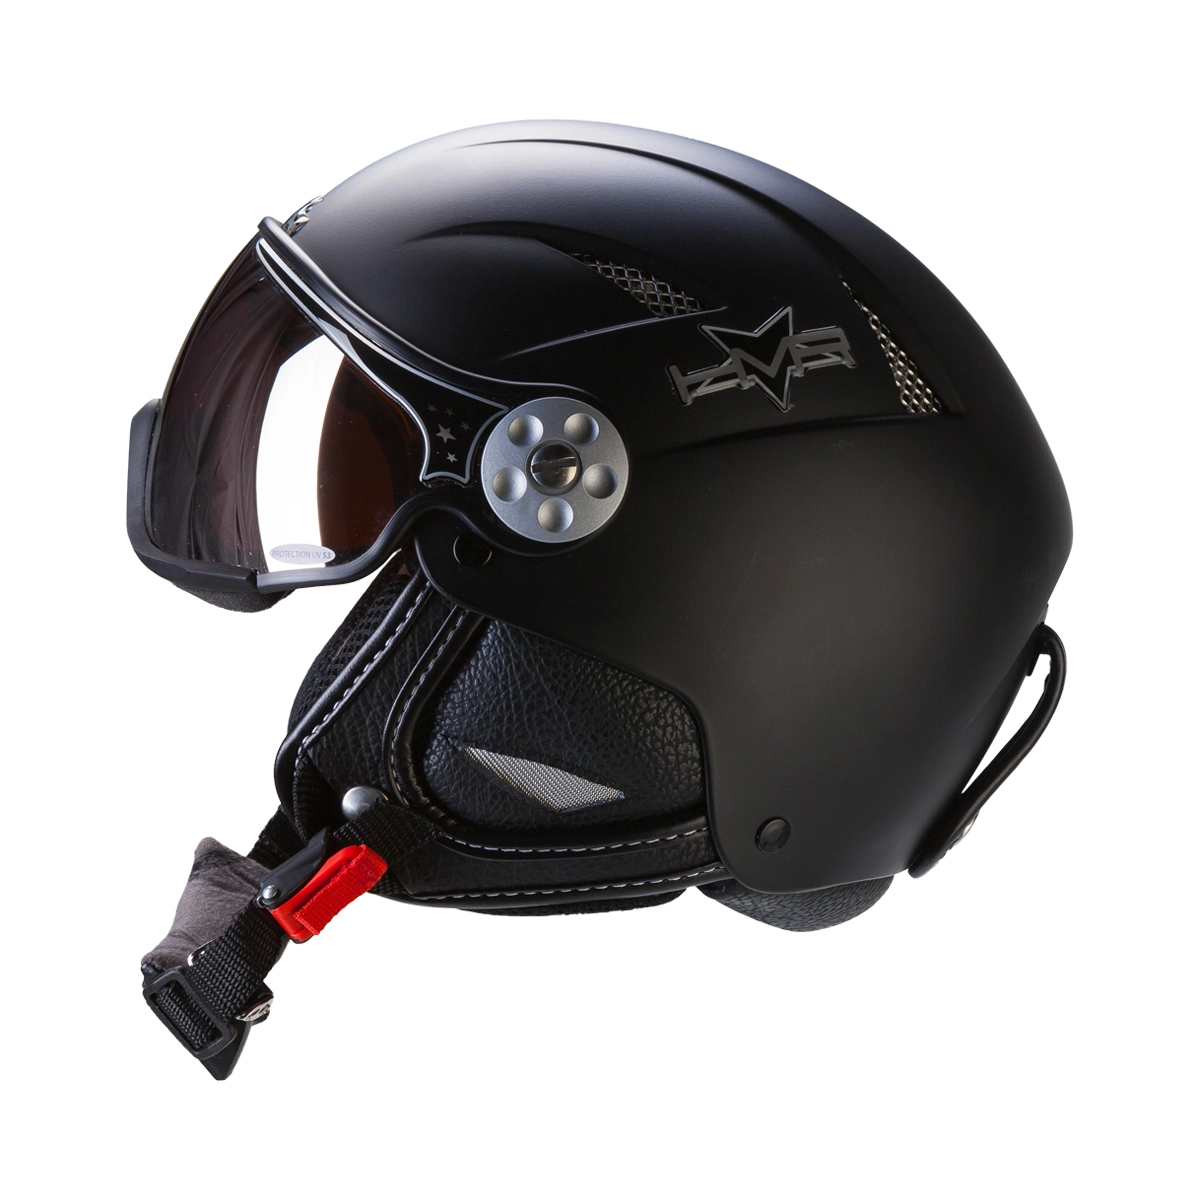 opraken Telemacos Civic HMR Helm - Helmen - Accessoires - Wintersport - Intersport van den Broek /  Biggelaar